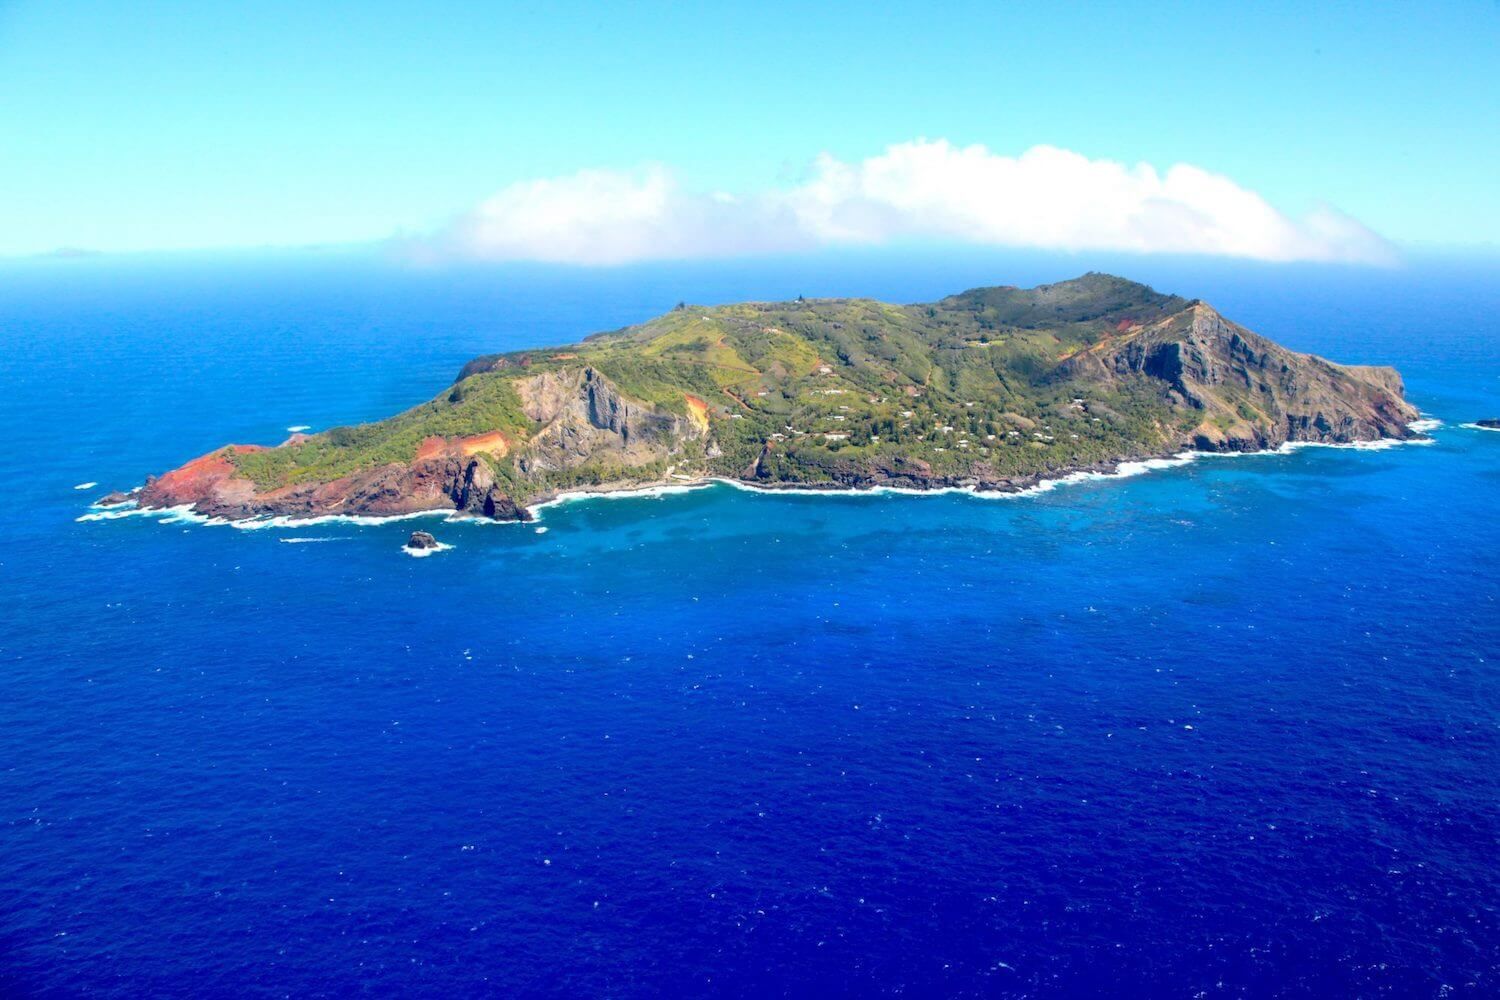  Pitcairn Islands